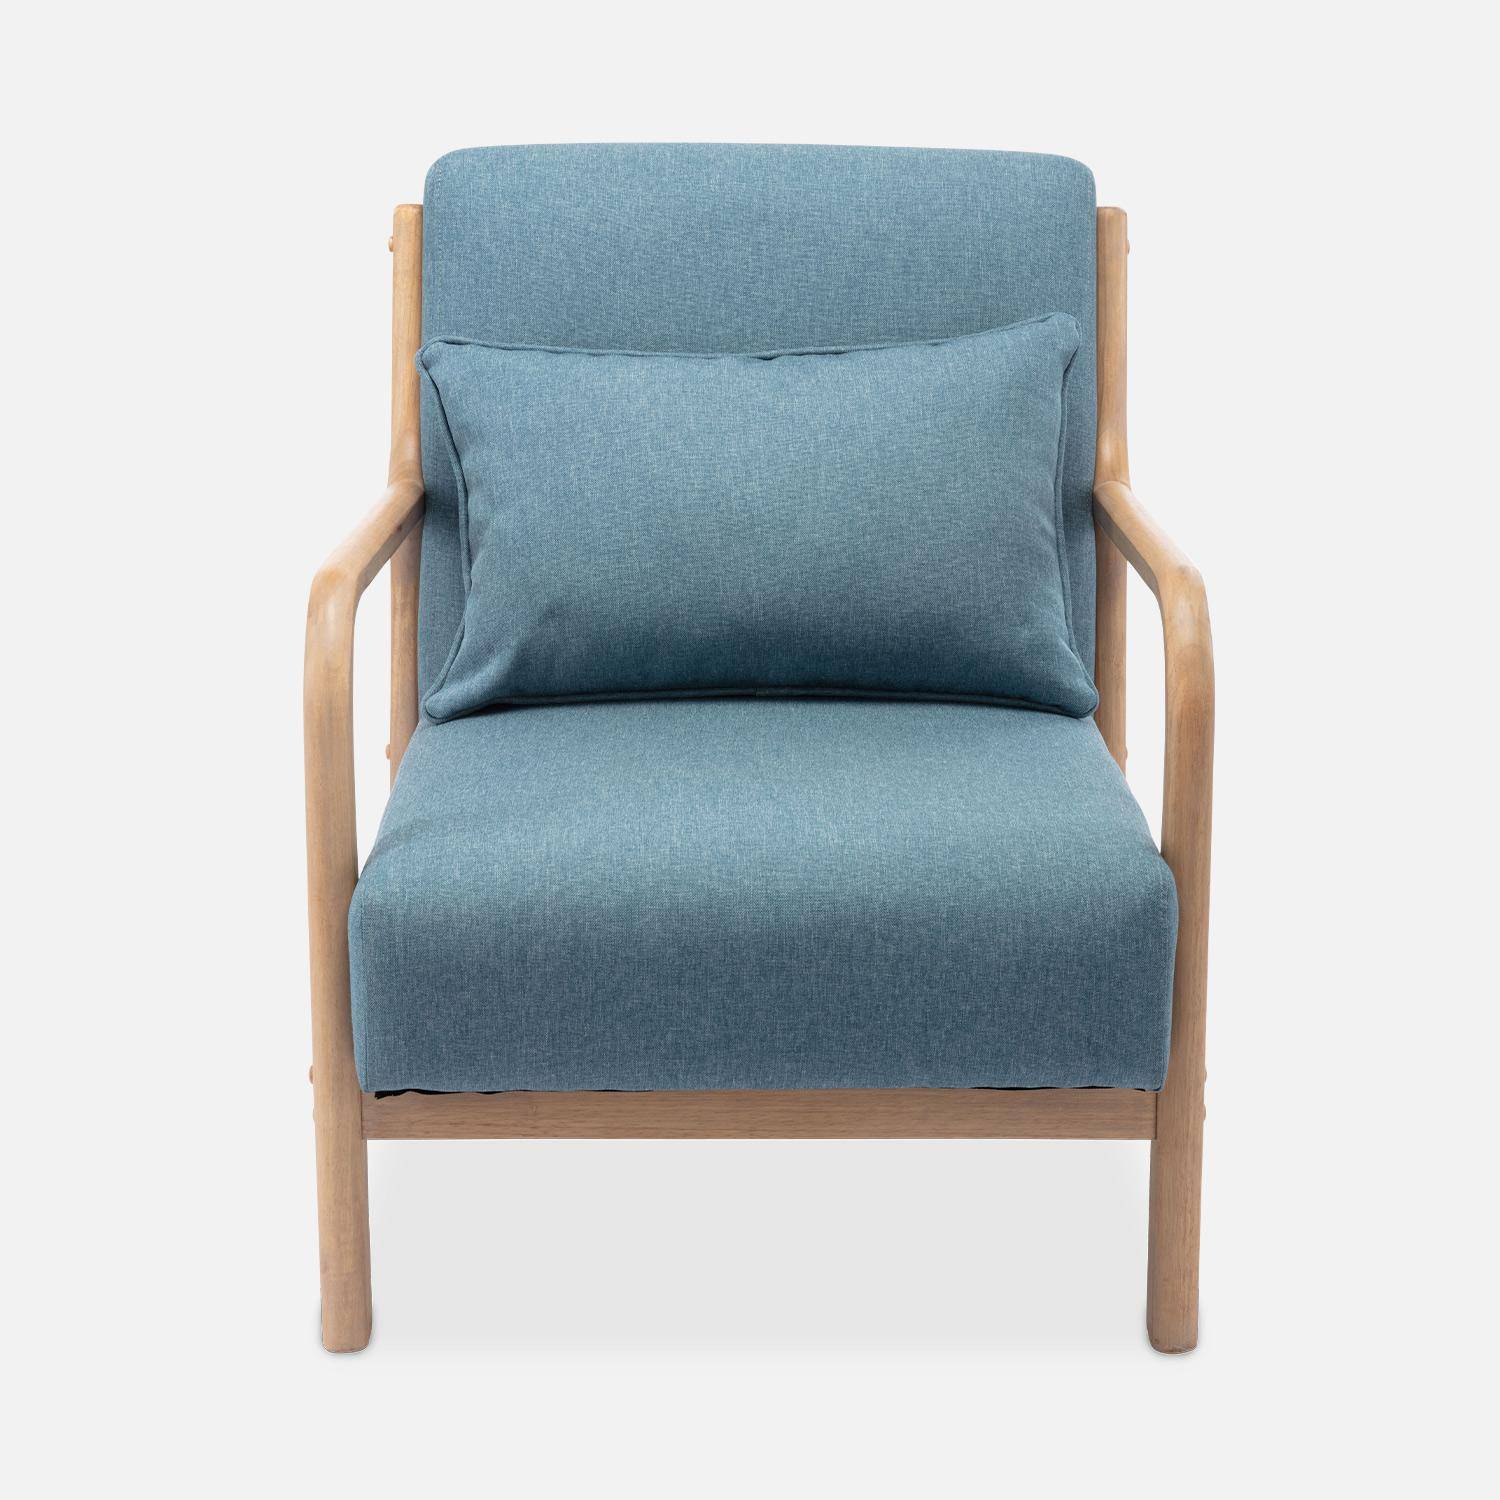 Sillón de diseño en madera y tela, 1 asiento recto fijo, patas de compás escandinavas, asiento cómodo, armazón de madera maciza, azul Photo5